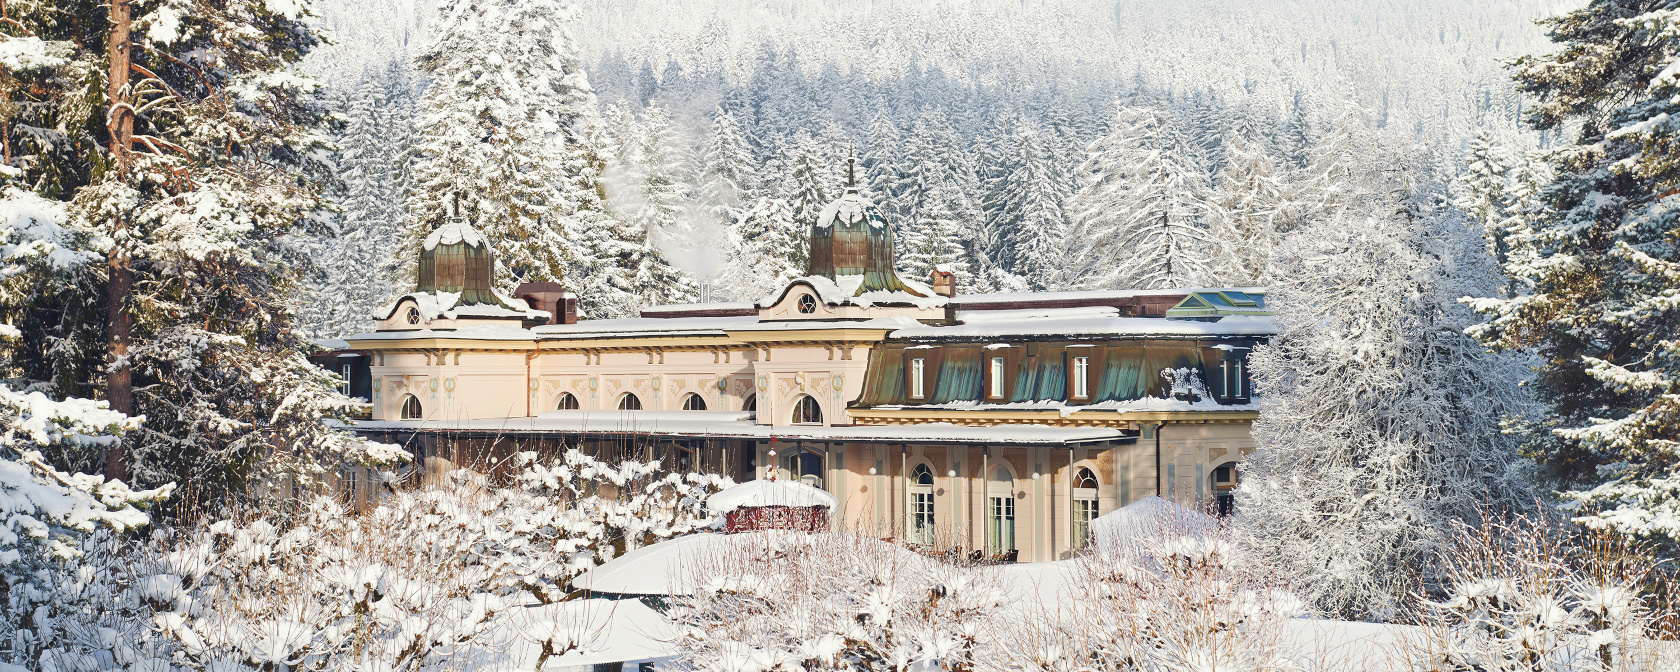 Waldhaus Flims Wellness Resort Blick auf das Grand Hotel im Winter. Foto: Waldhaus Flims Wellness Resort